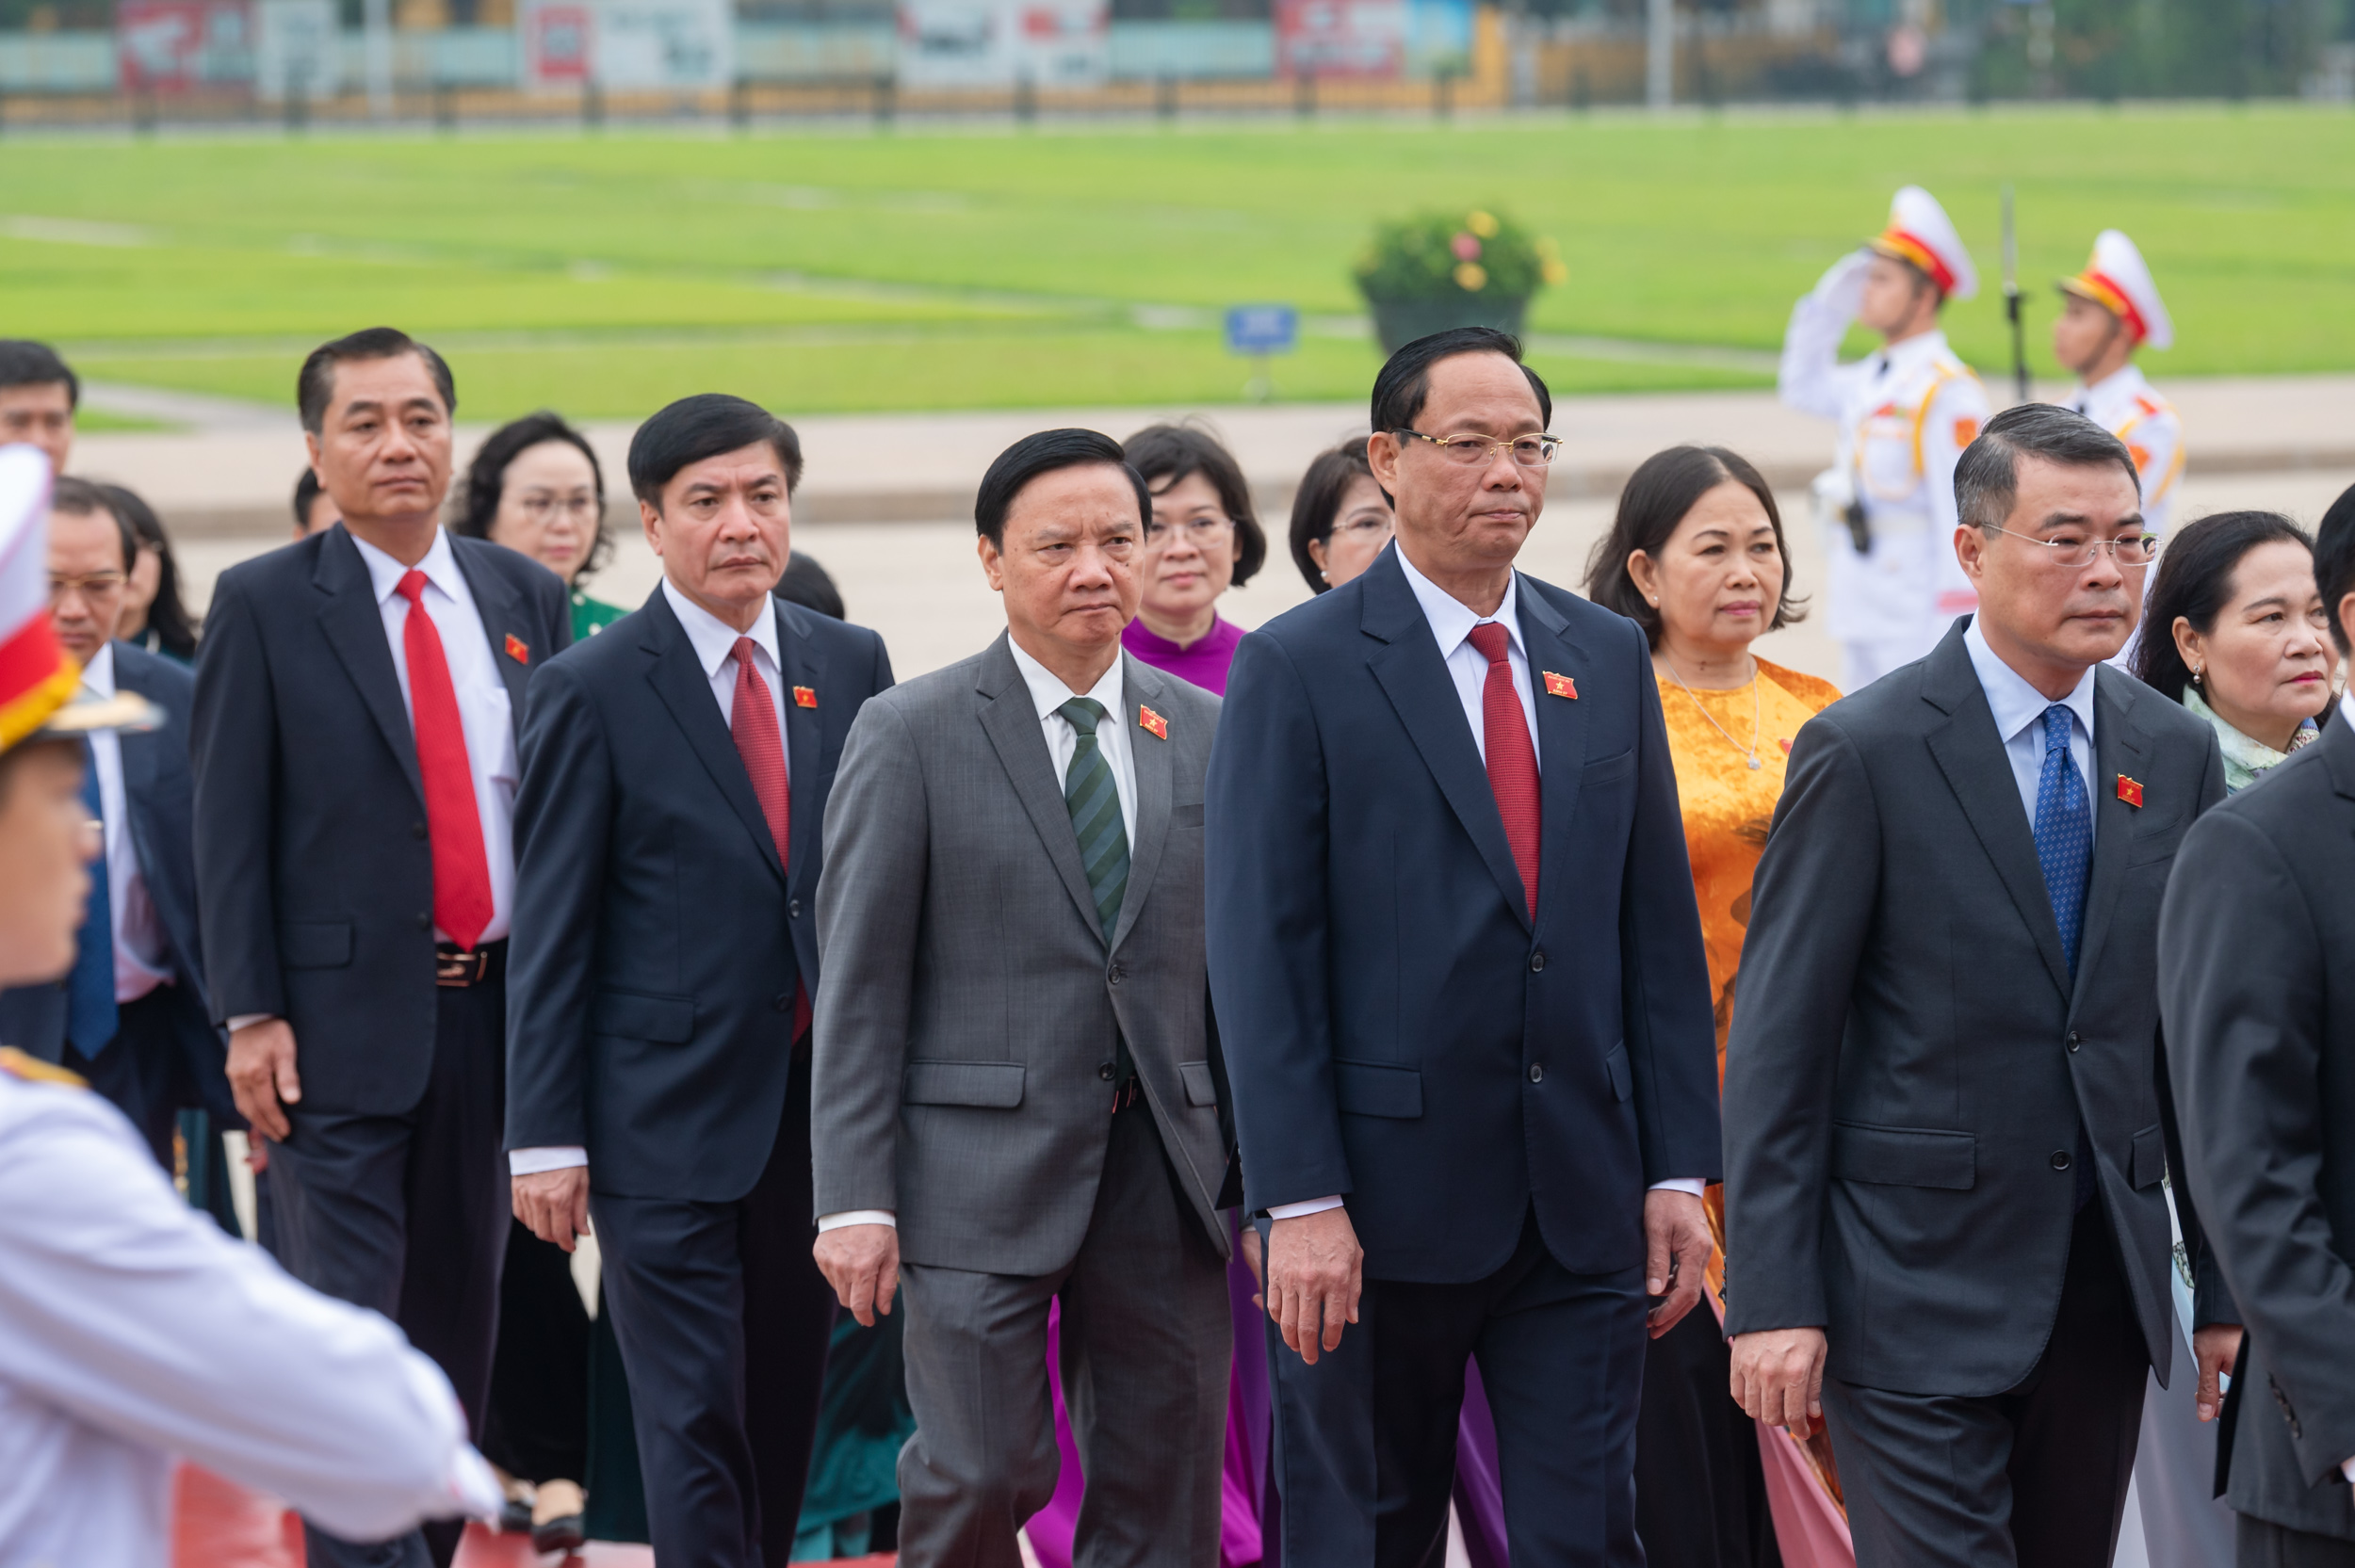 Lãnh đạo Đảng, Nhà nước cùng các đại biểu Quốc hội vào Lăng viếng Chủ tịch Hồ Chí Minh